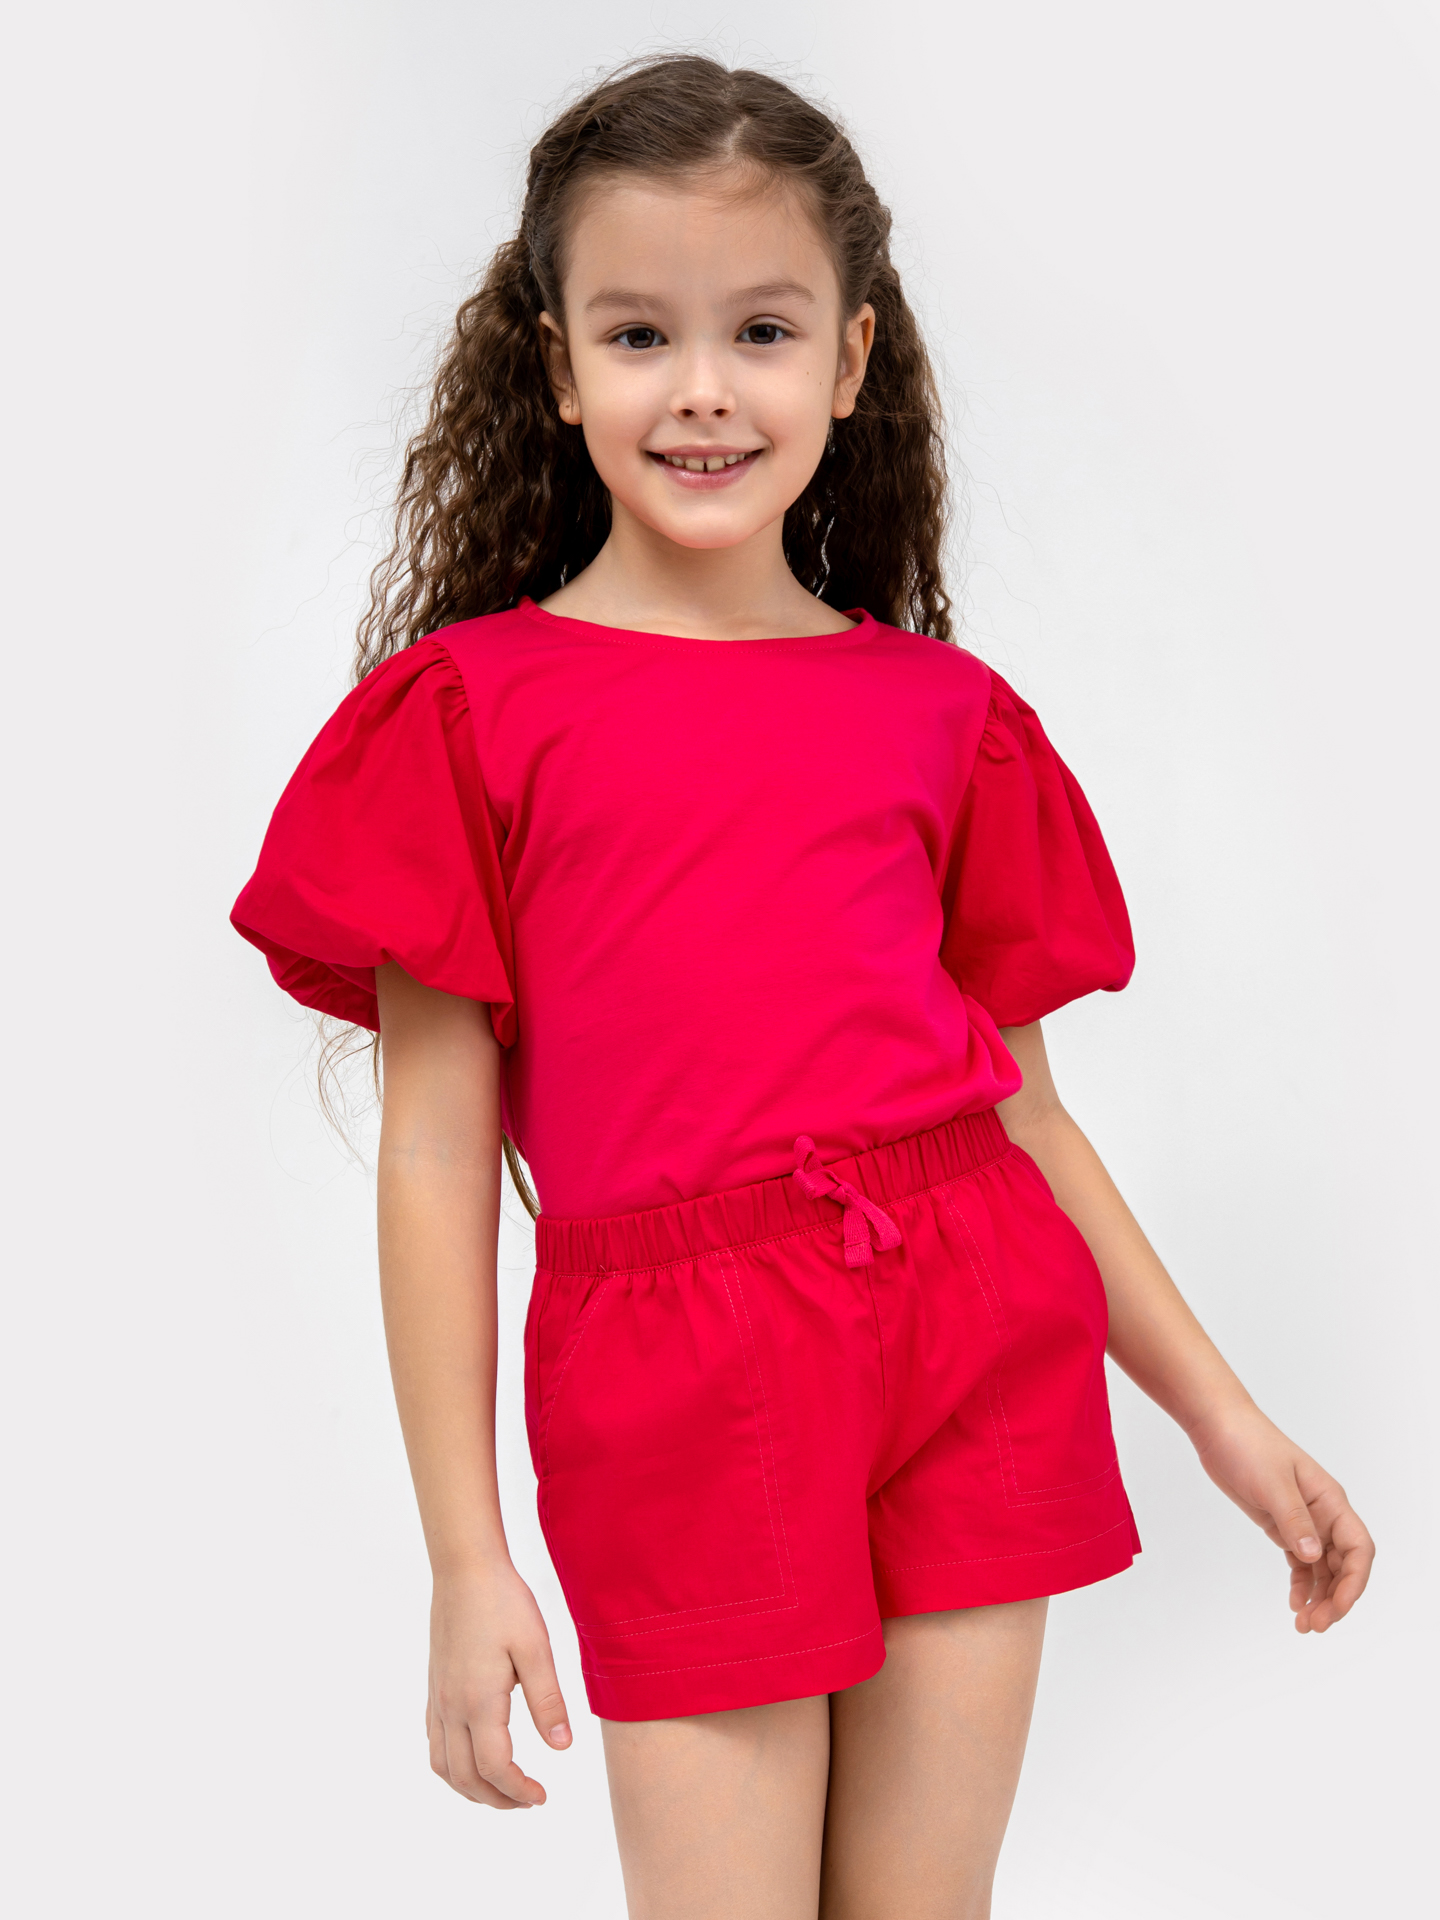 Джемпер с короткими объемными рукавами малинового цвета для девочек